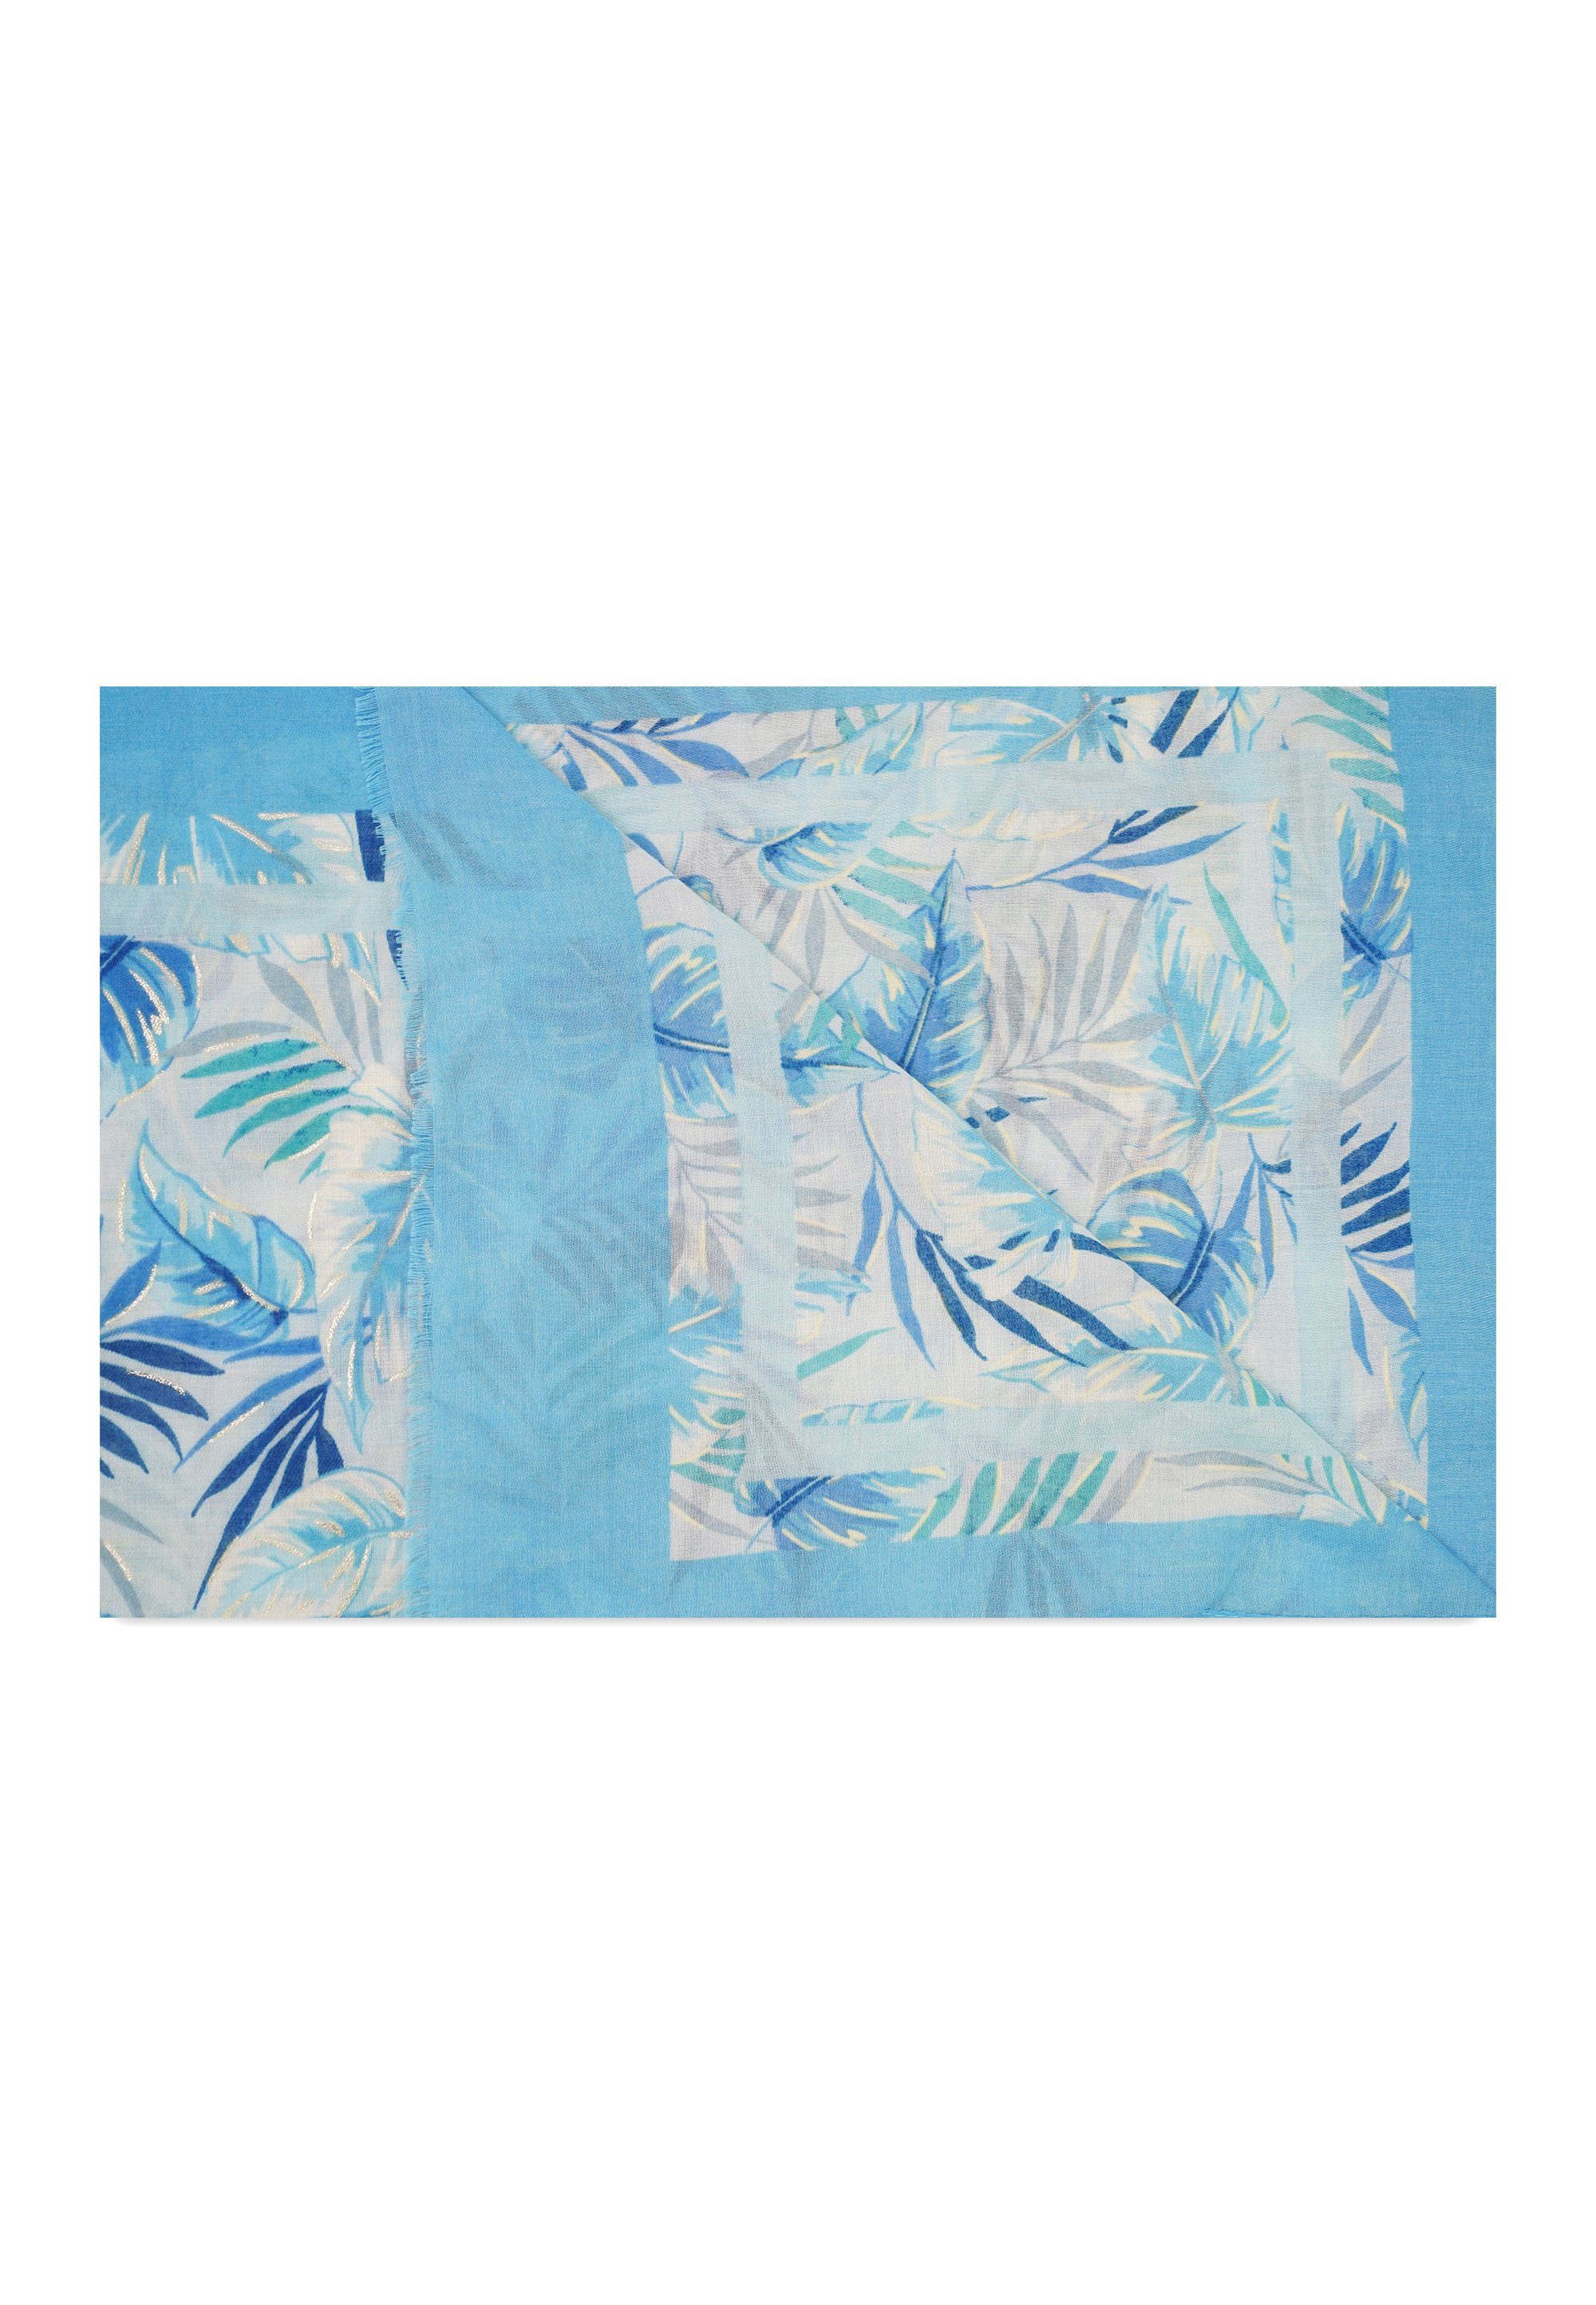 Harpa Botanik-Print silberfarben SEDA, mit und Metallic-Effekt blau, Modeschal